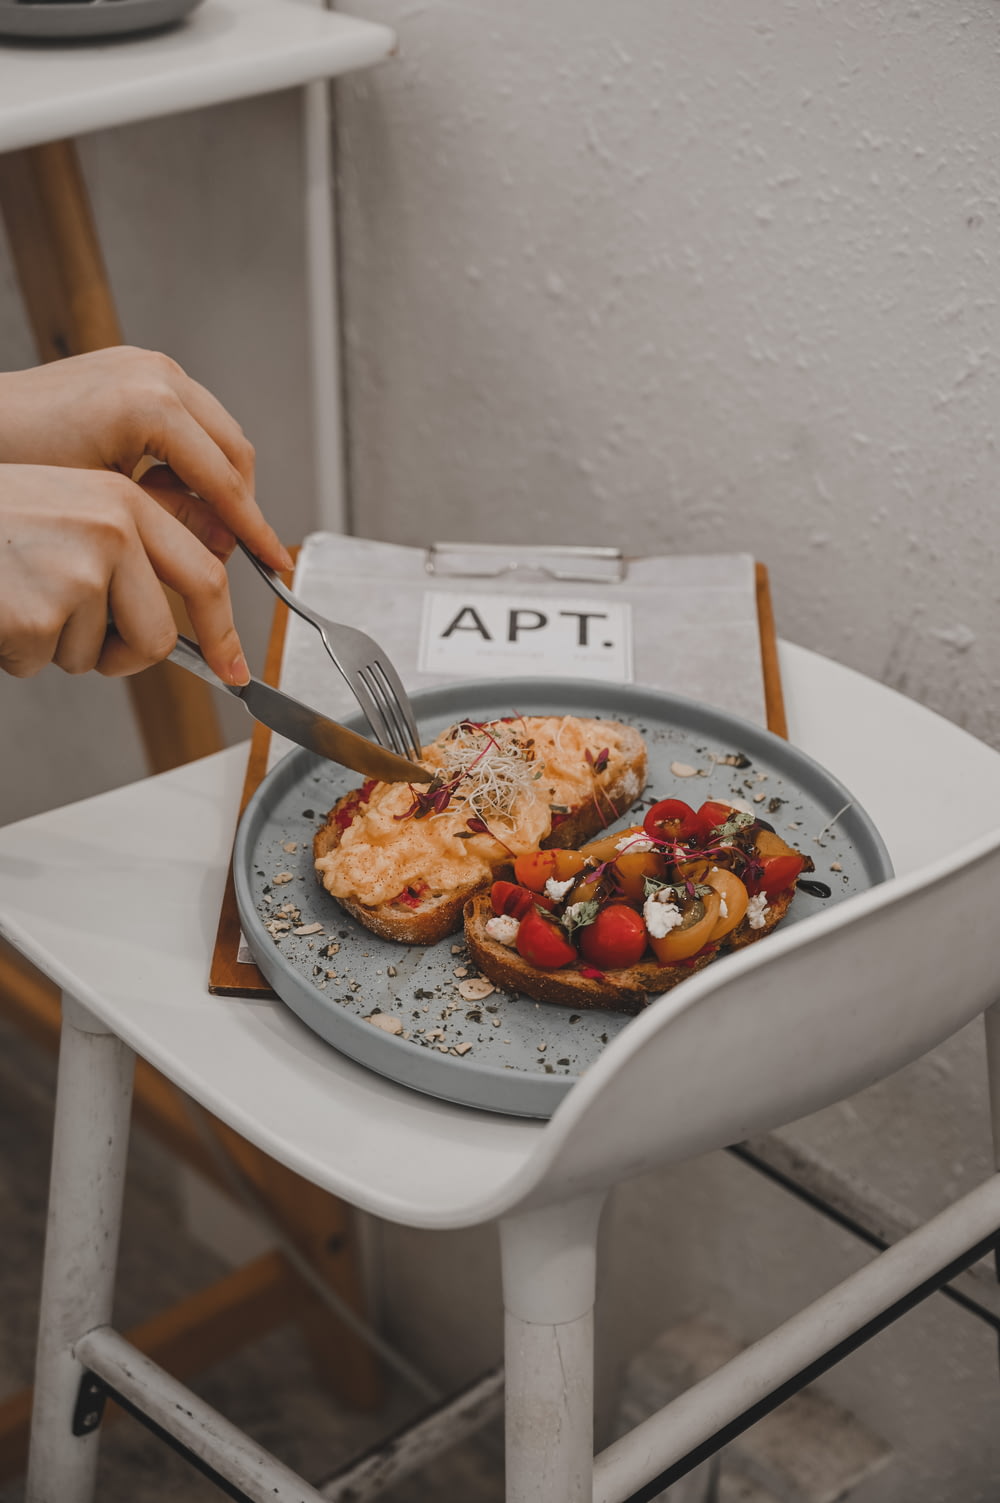 스테인레스 스틸 포크와 흰색 세라믹 접시에 토마토를 자르는 칼을 들고 있는 사람